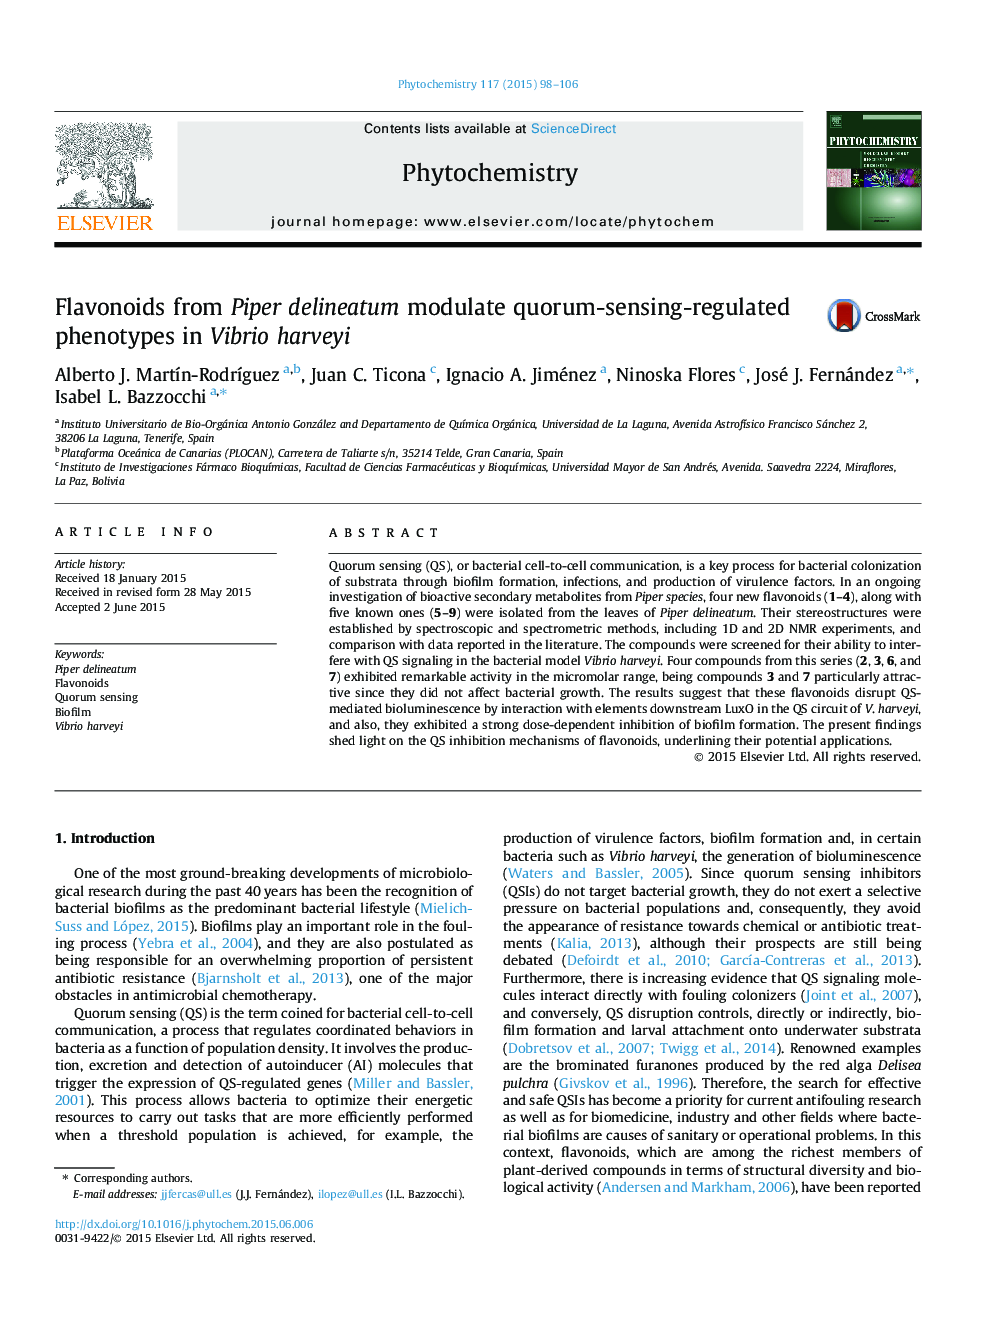 Flavonoids from Piper delineatum modulate quorum-sensing-regulated phenotypes in Vibrio harveyi